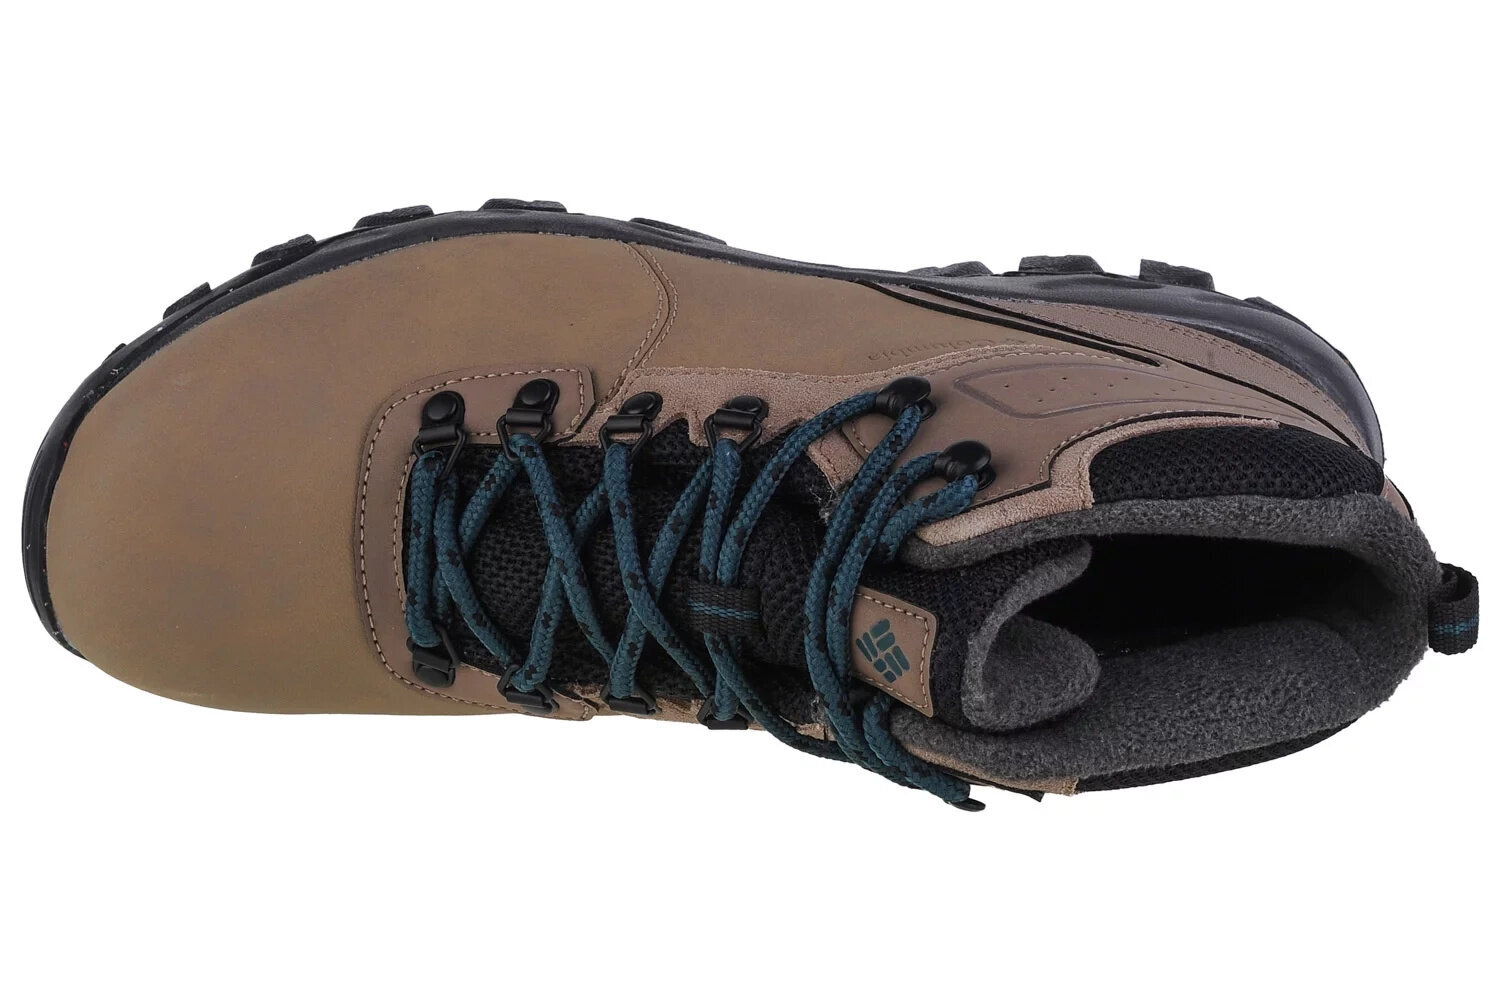 Žygio batai vyrams Columbia Newton Ridge WP Omni-Heat II 2056191240 61635, rudi kaina ir informacija | Kedai vyrams | pigu.lt